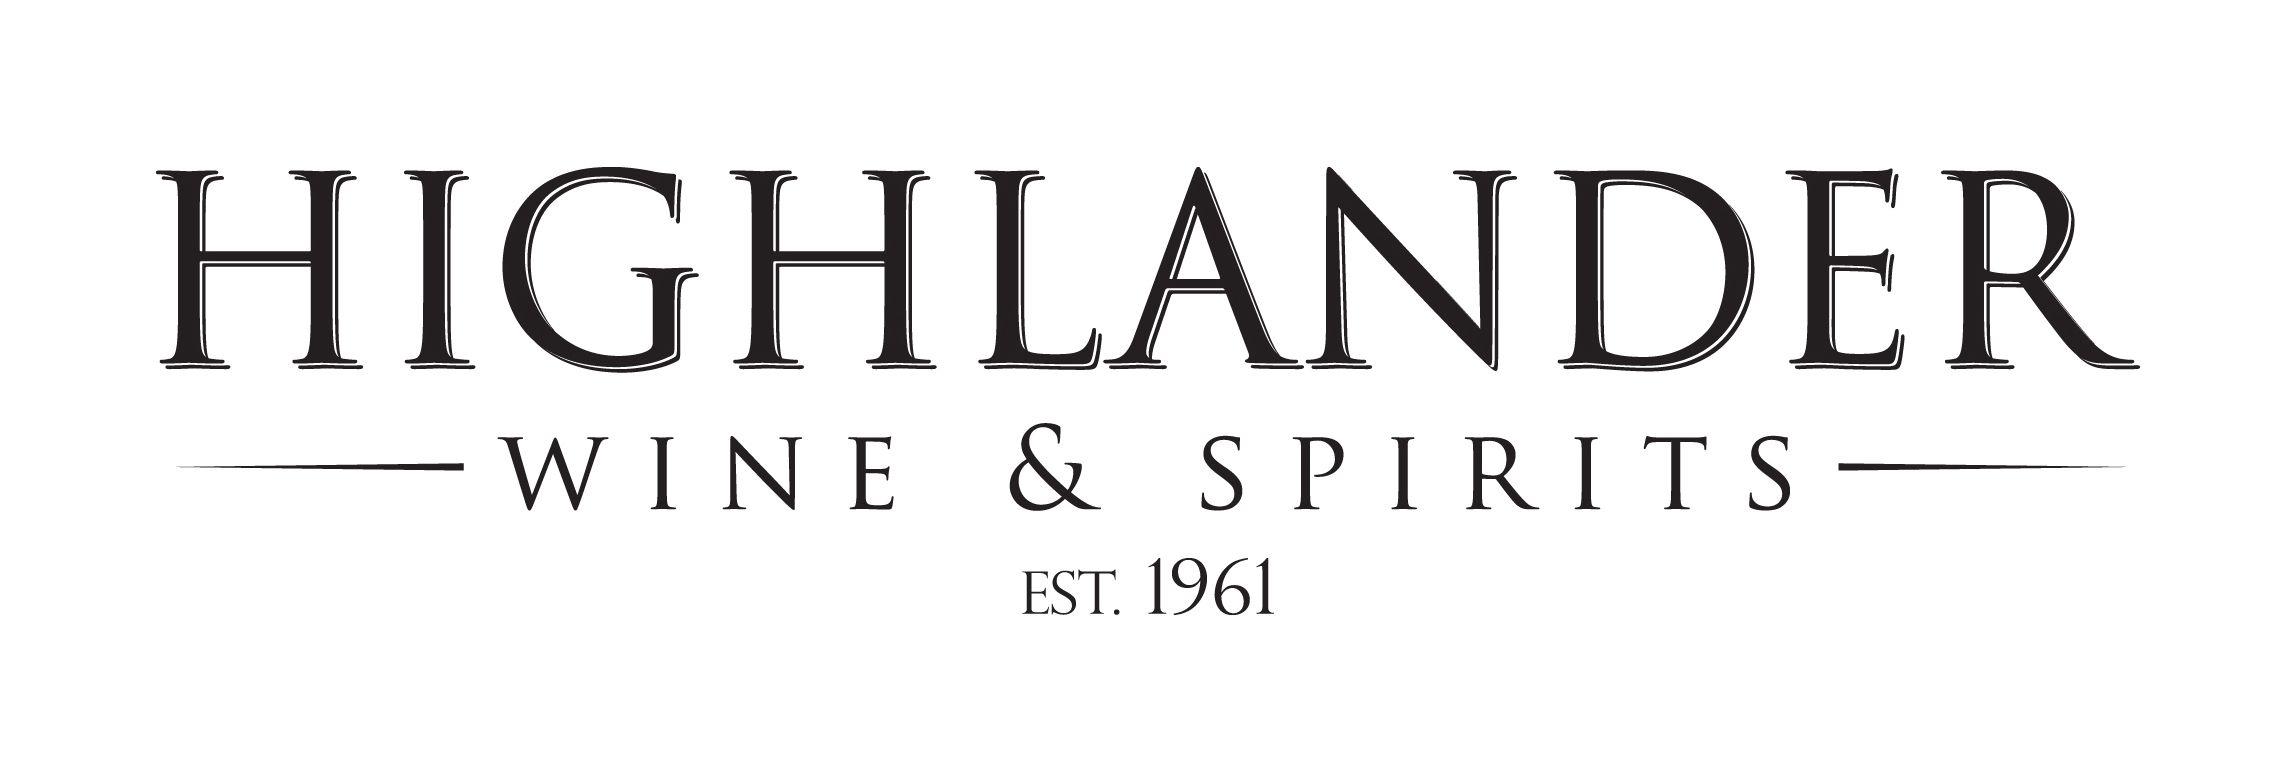 Highlander Logo - Annual Wine Sales Event @ Highlander | MortgageTree October 19 Event